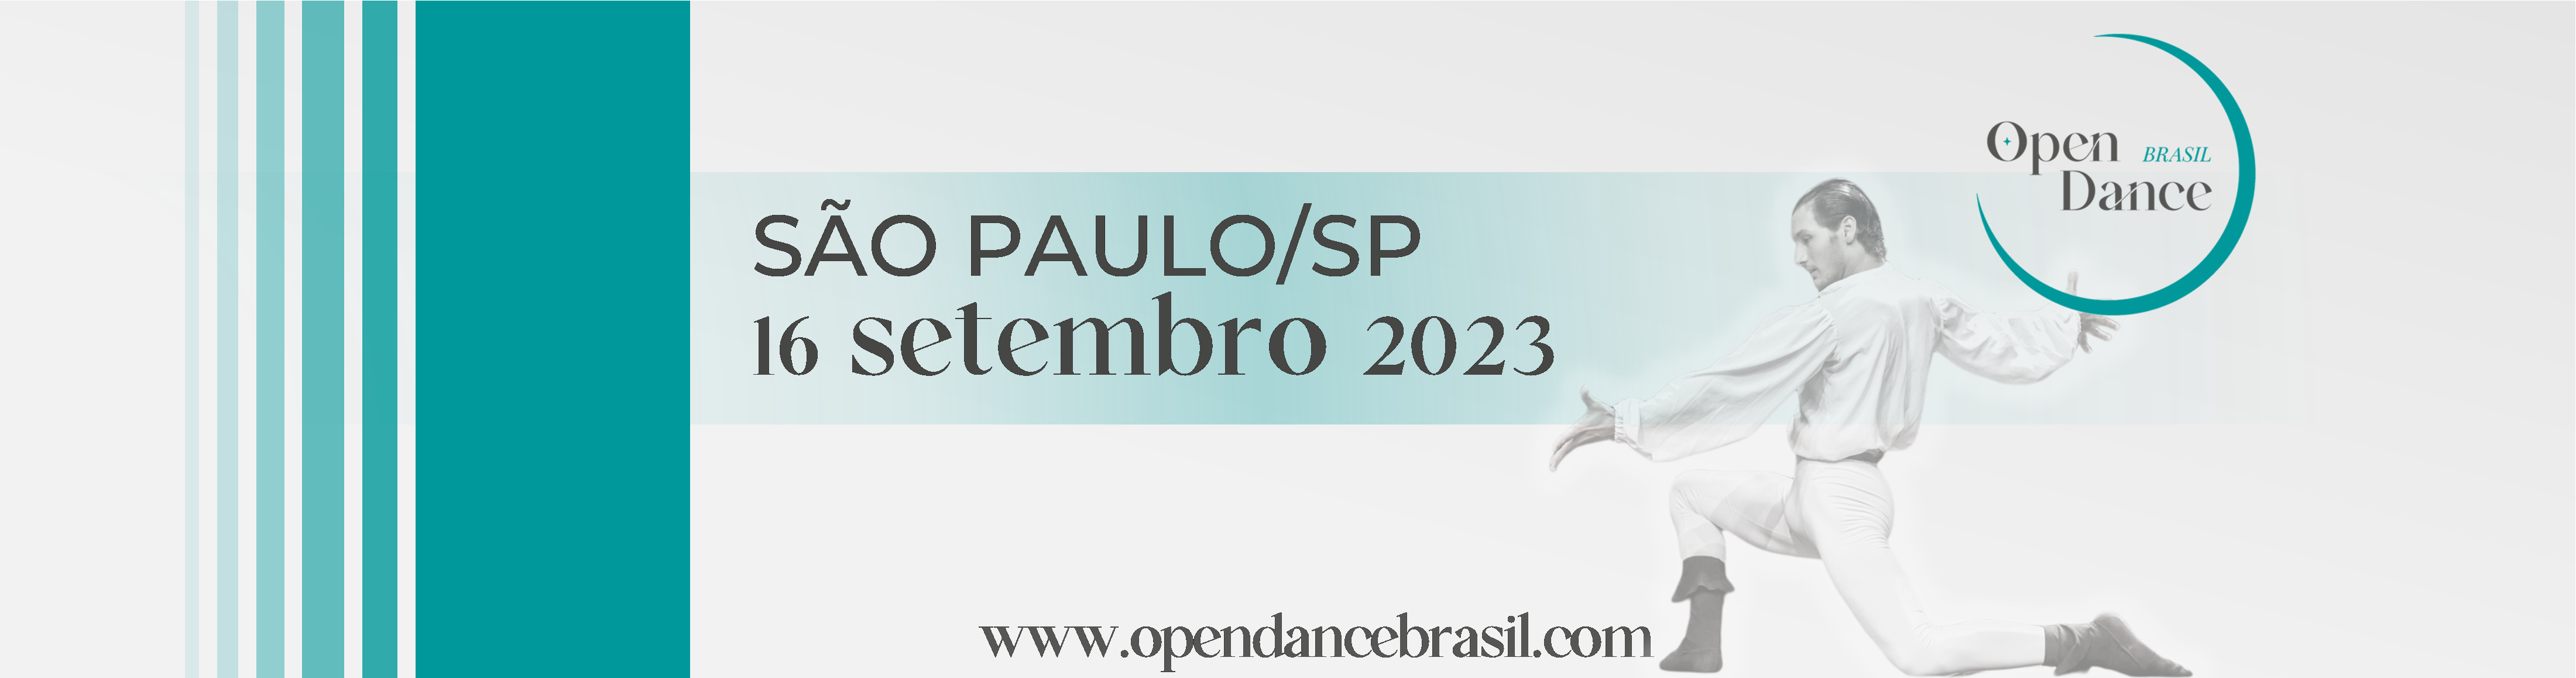 Open Dance Brasil - Edição SP 2023